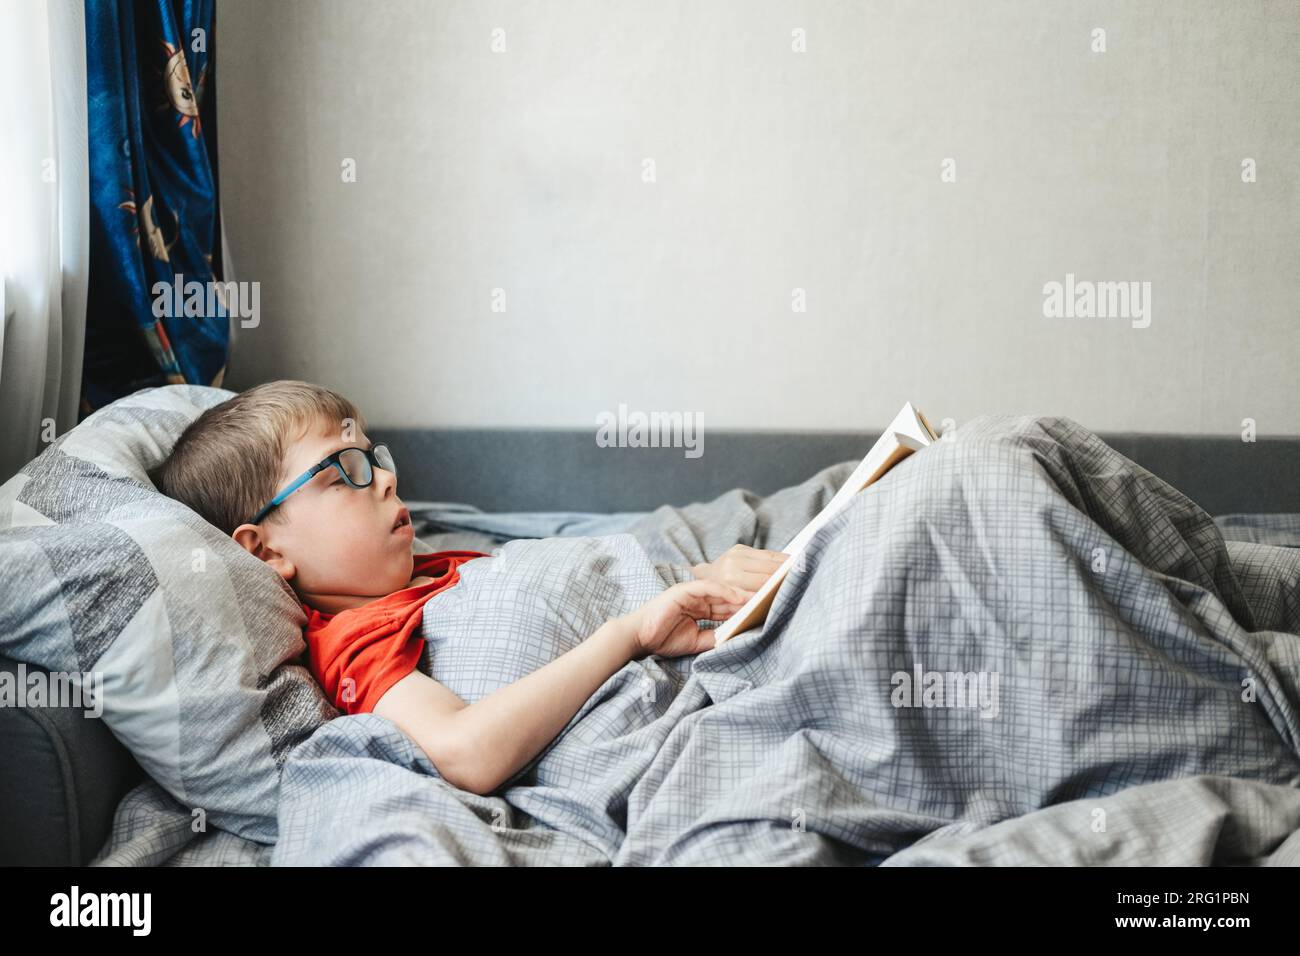 Ein Junge mit Brille liegt auf einem Bett unter einer Decke und liest ein Buch. Ein Kind im Grundschulalter liest ein Buch in seinem Bett. Stockfoto